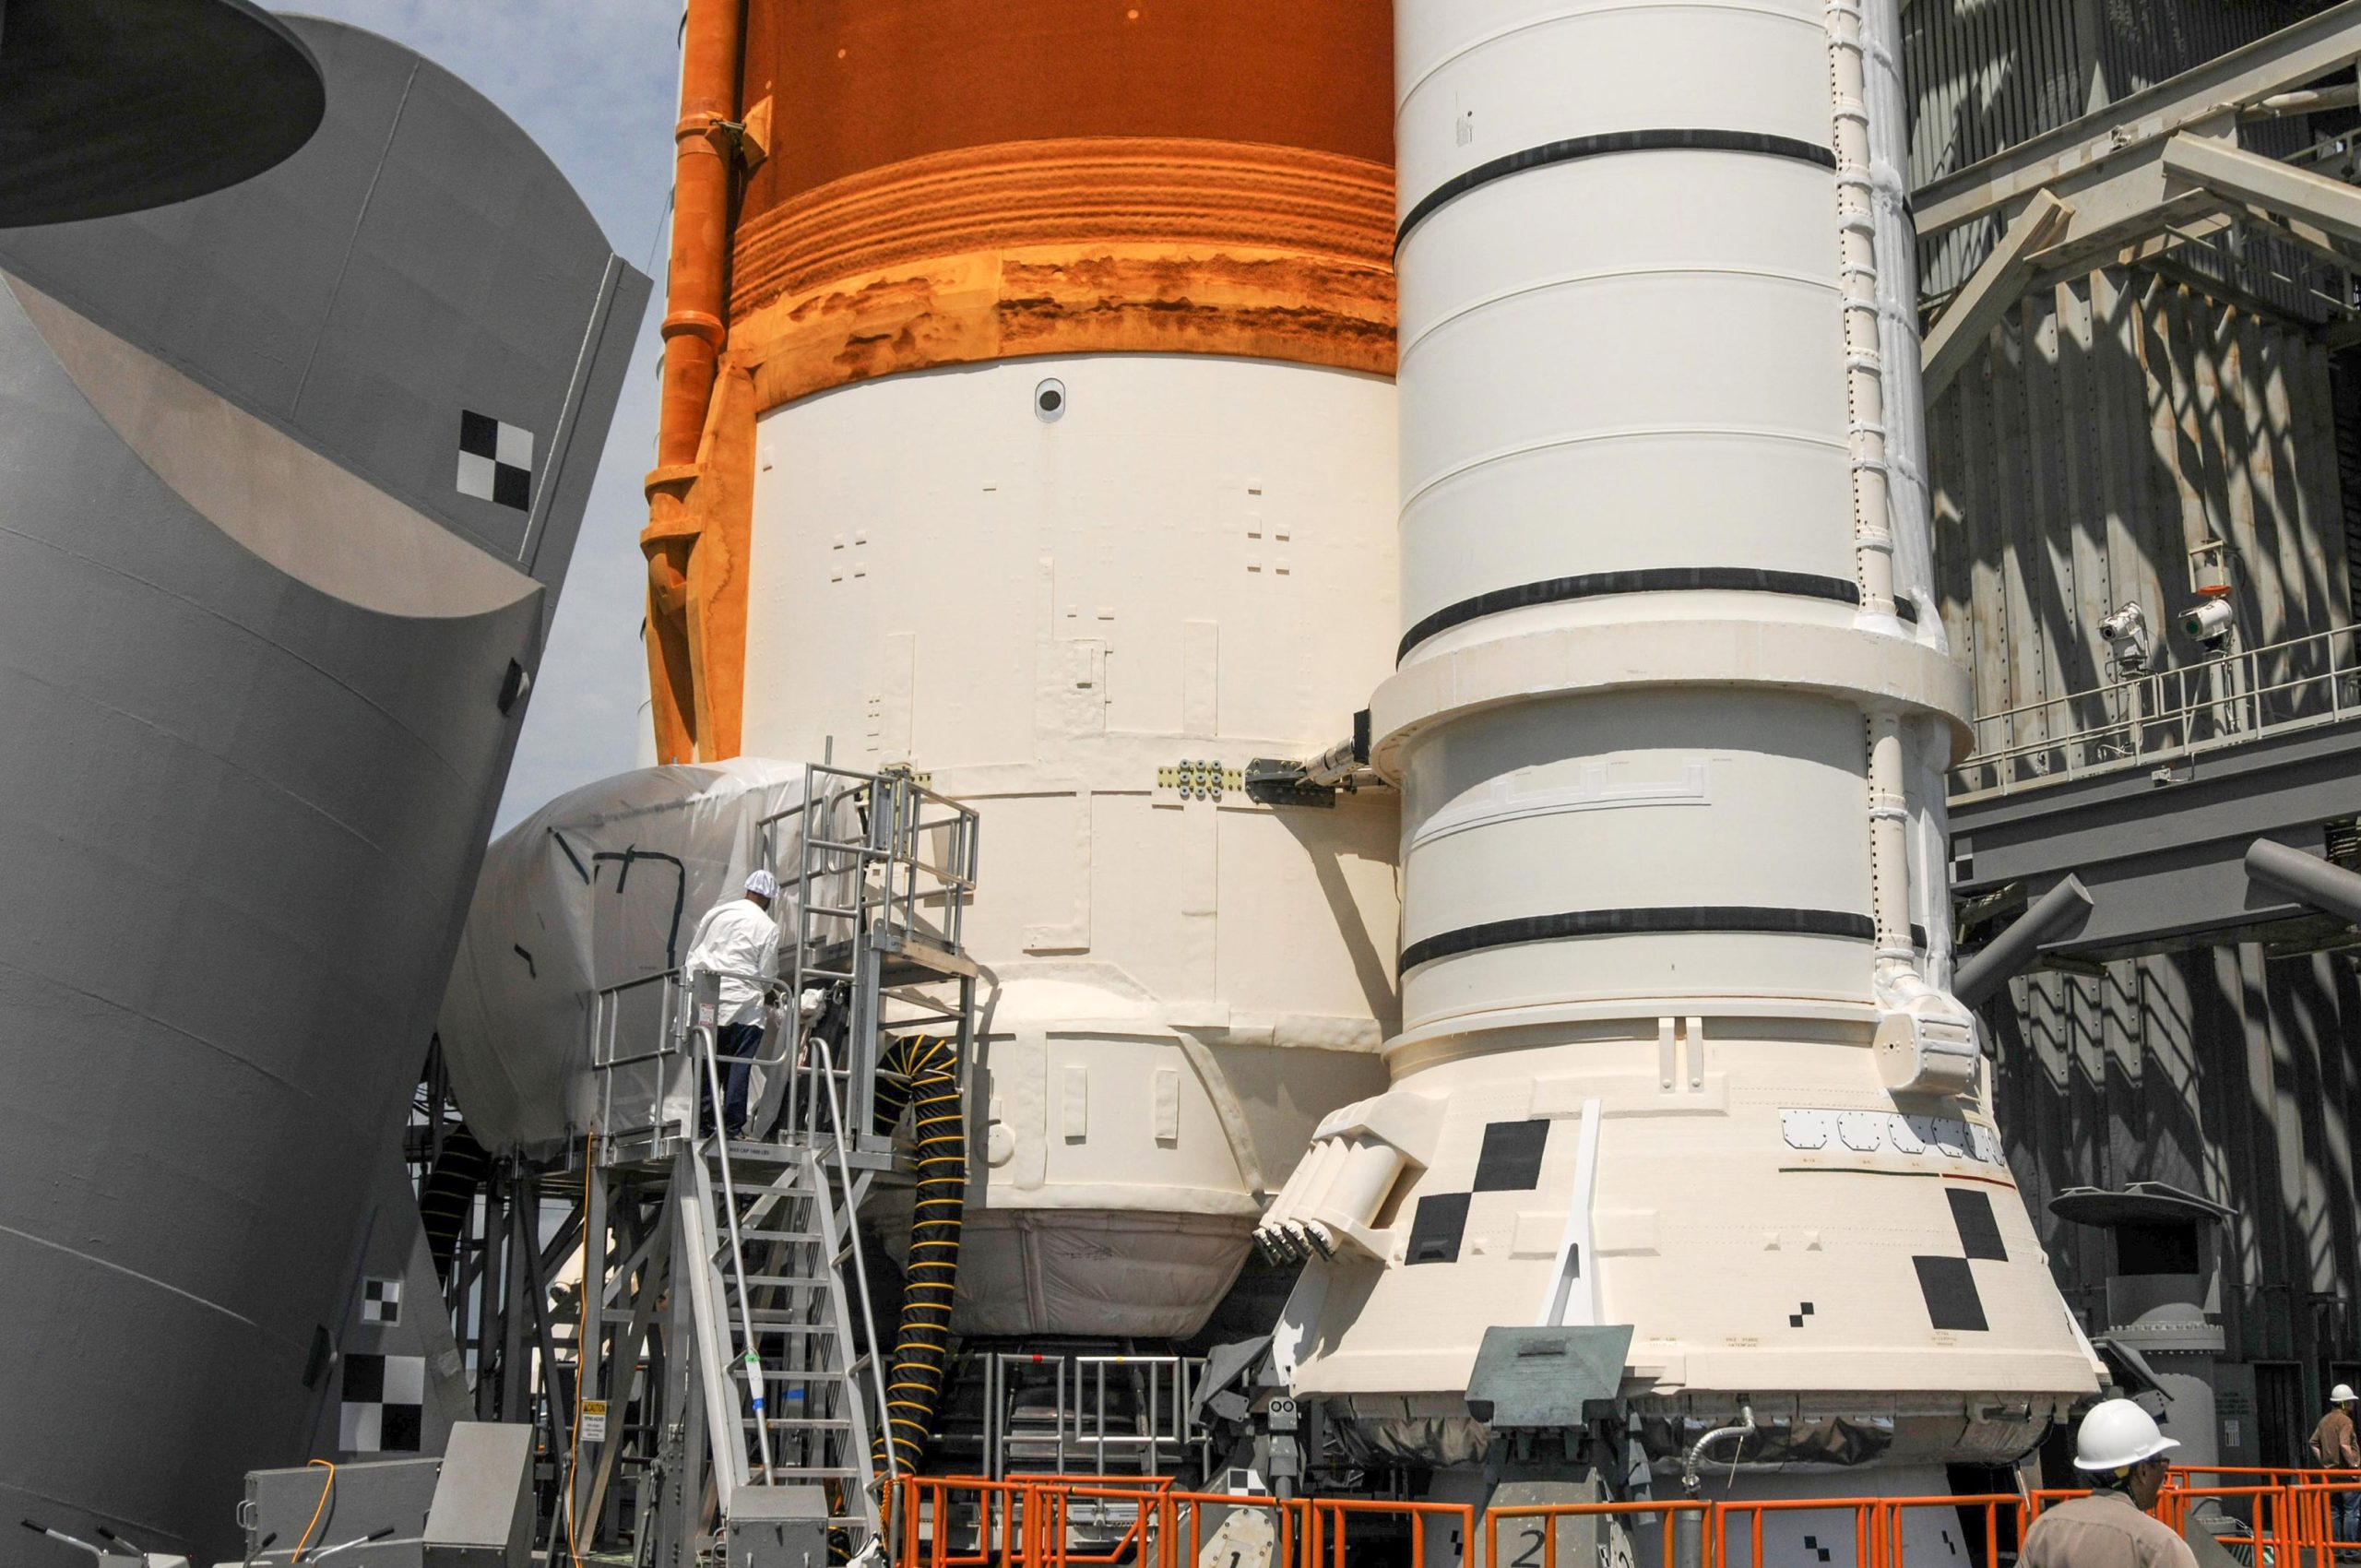 Les travaux de réparation de la fusée Artemis I Moon sont en cours et les préparatifs sont en cours pour la prochaine opportunité de lancement